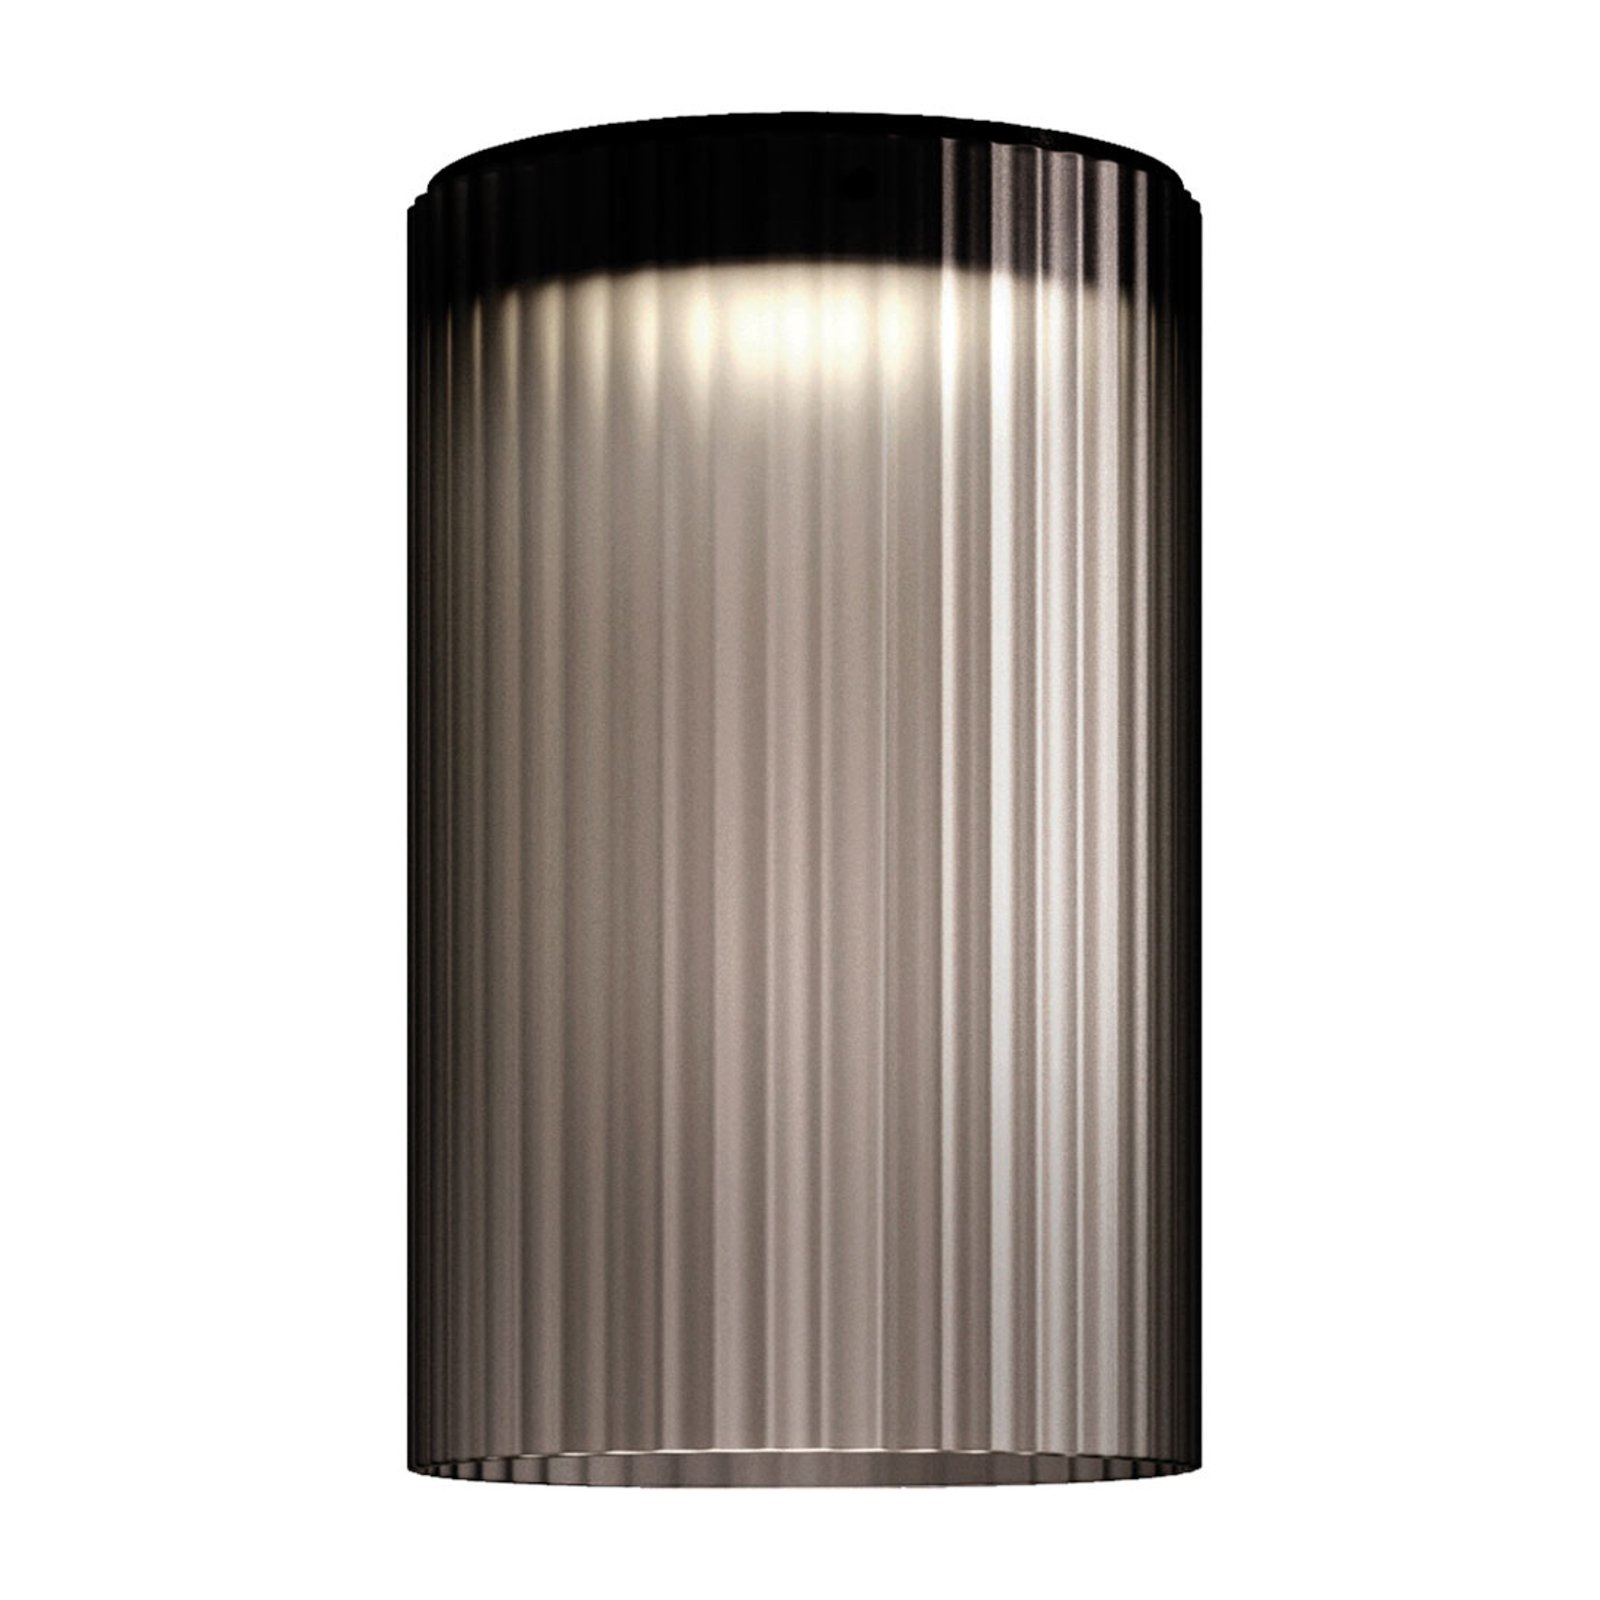 Kundalini Giass - LED plafondlamp, Ø 30 cm, grijs